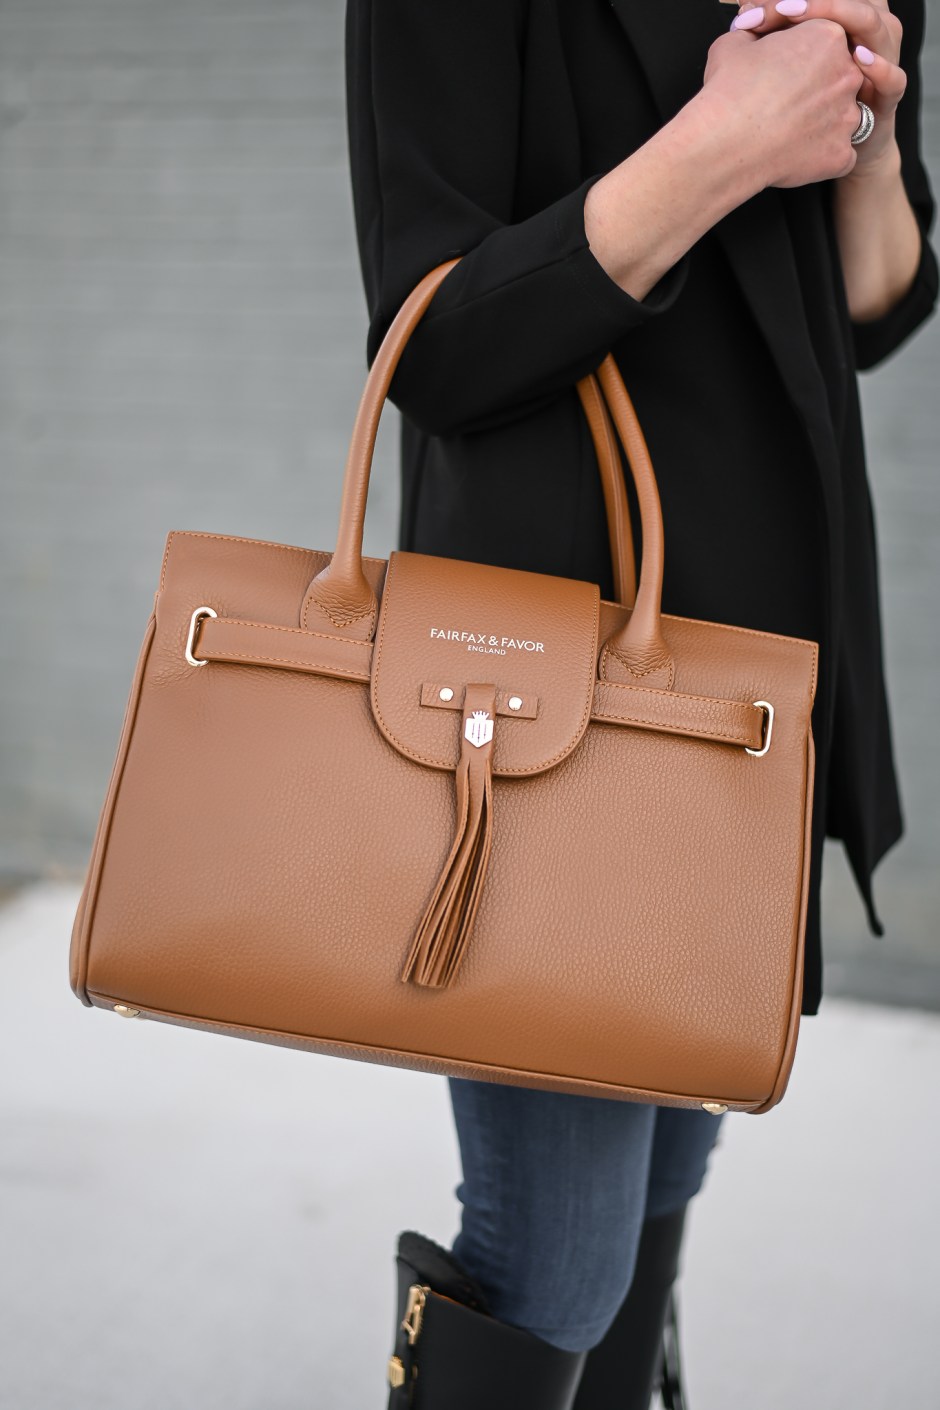 Fairfax and favor leather handbag